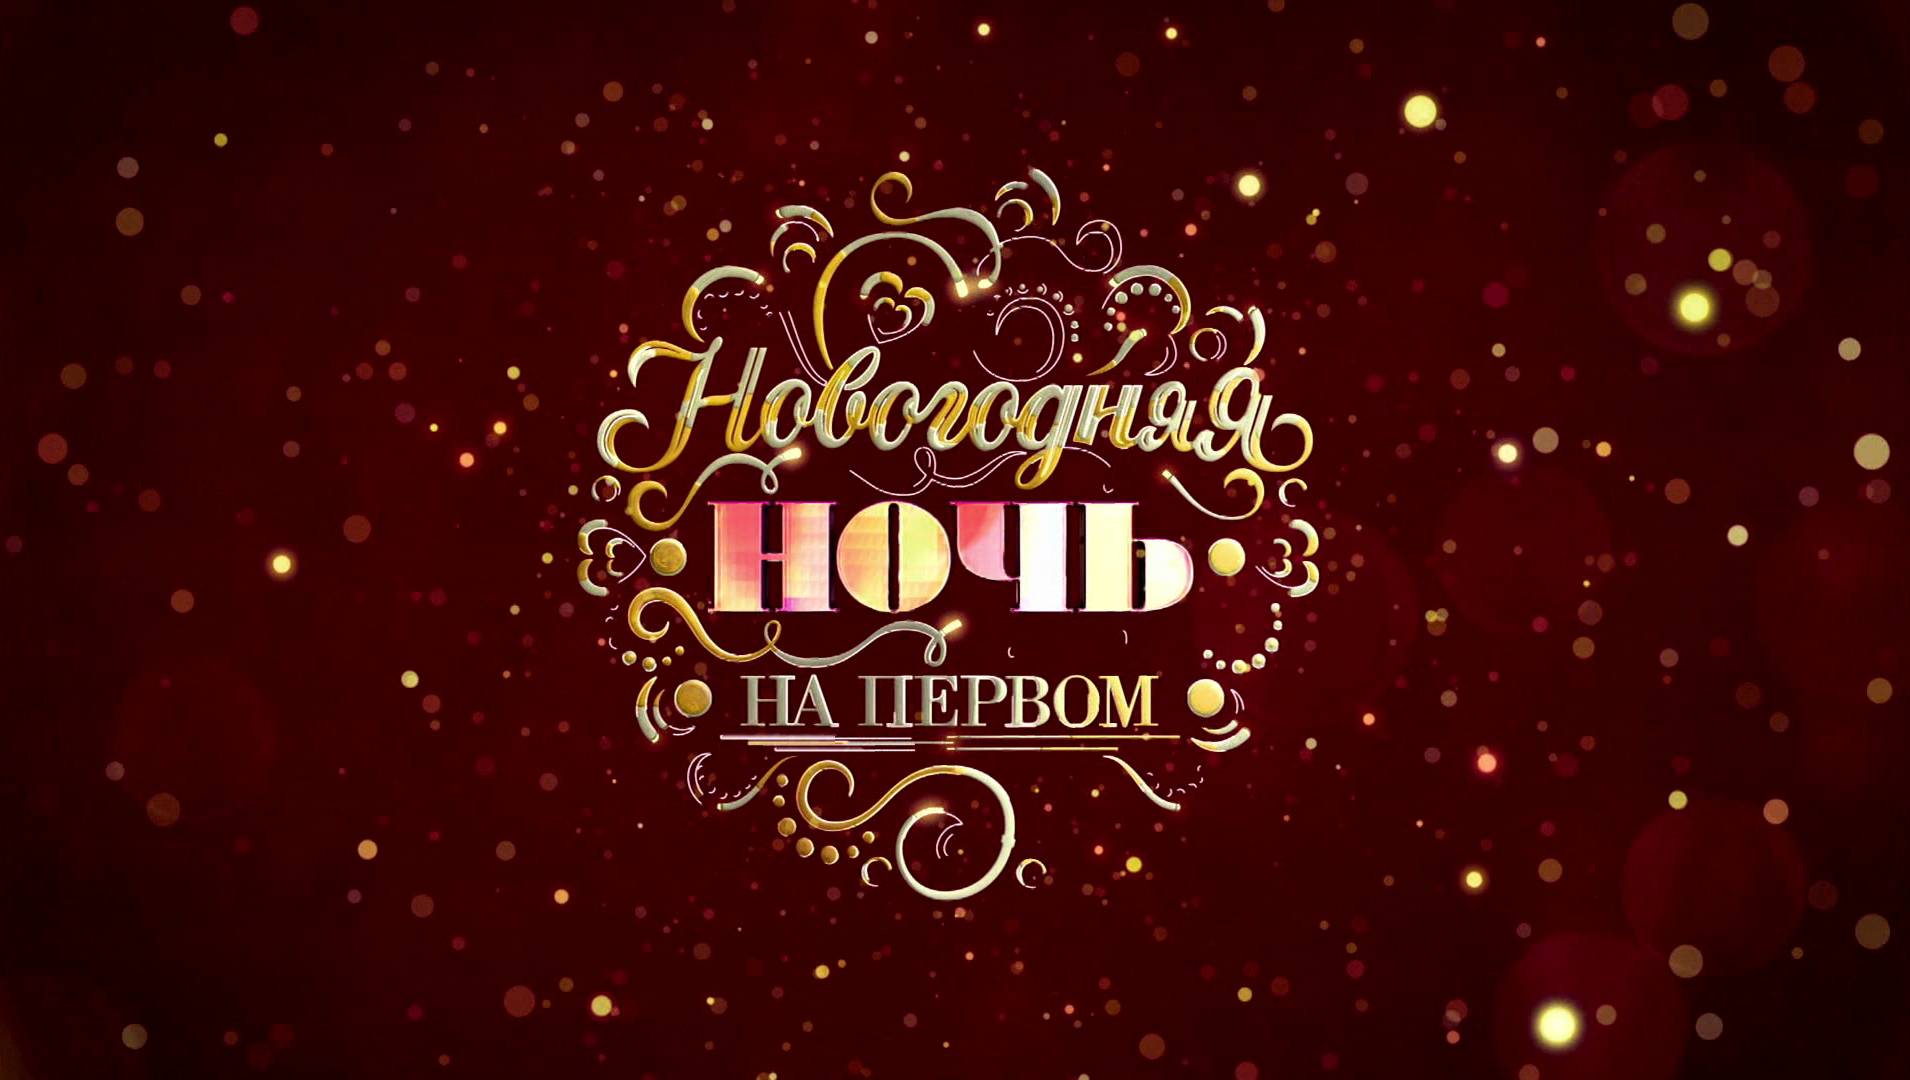 Новогодняя ночь на Первом (2019) - ТВ-шоу